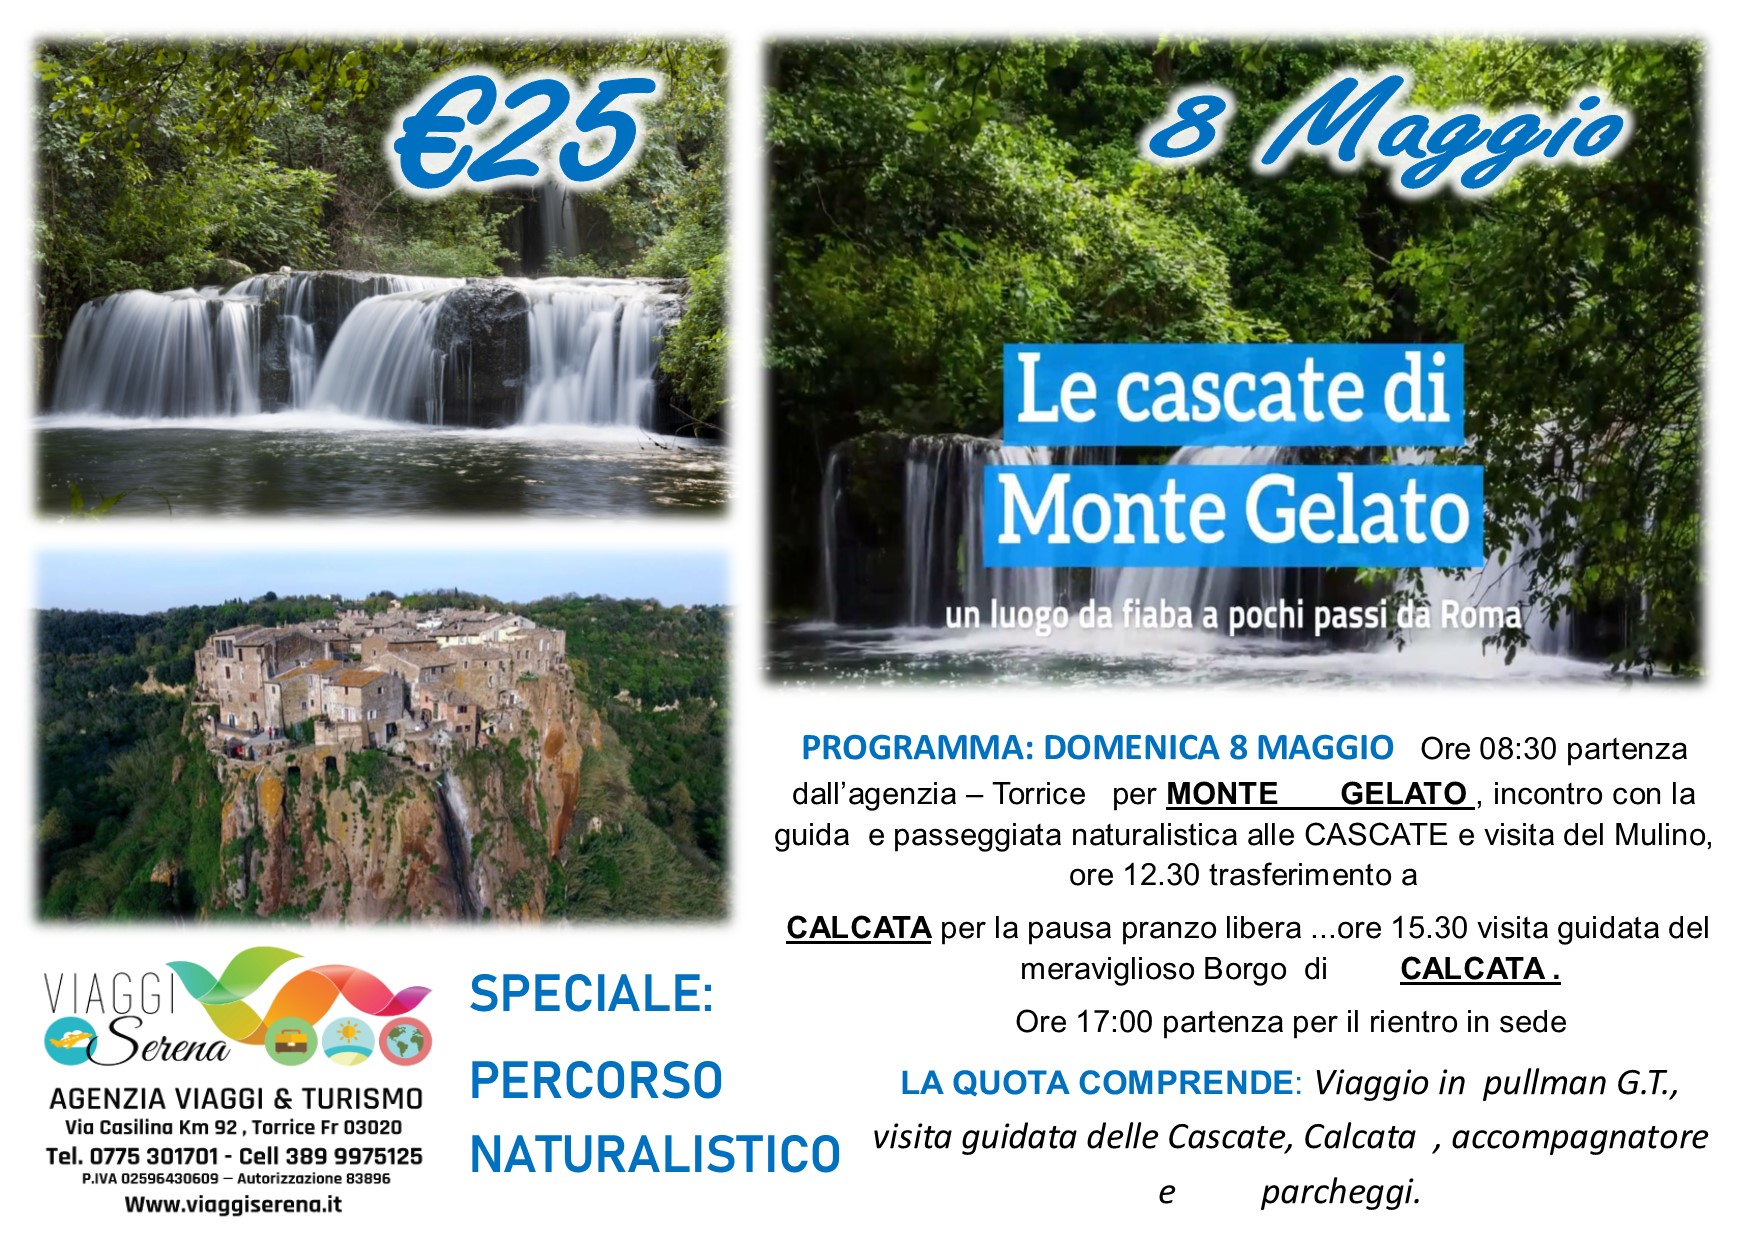 Viaggi di Gruppo: Cascate di Monte Gelato & Calcata 8 Maggio € 25,00